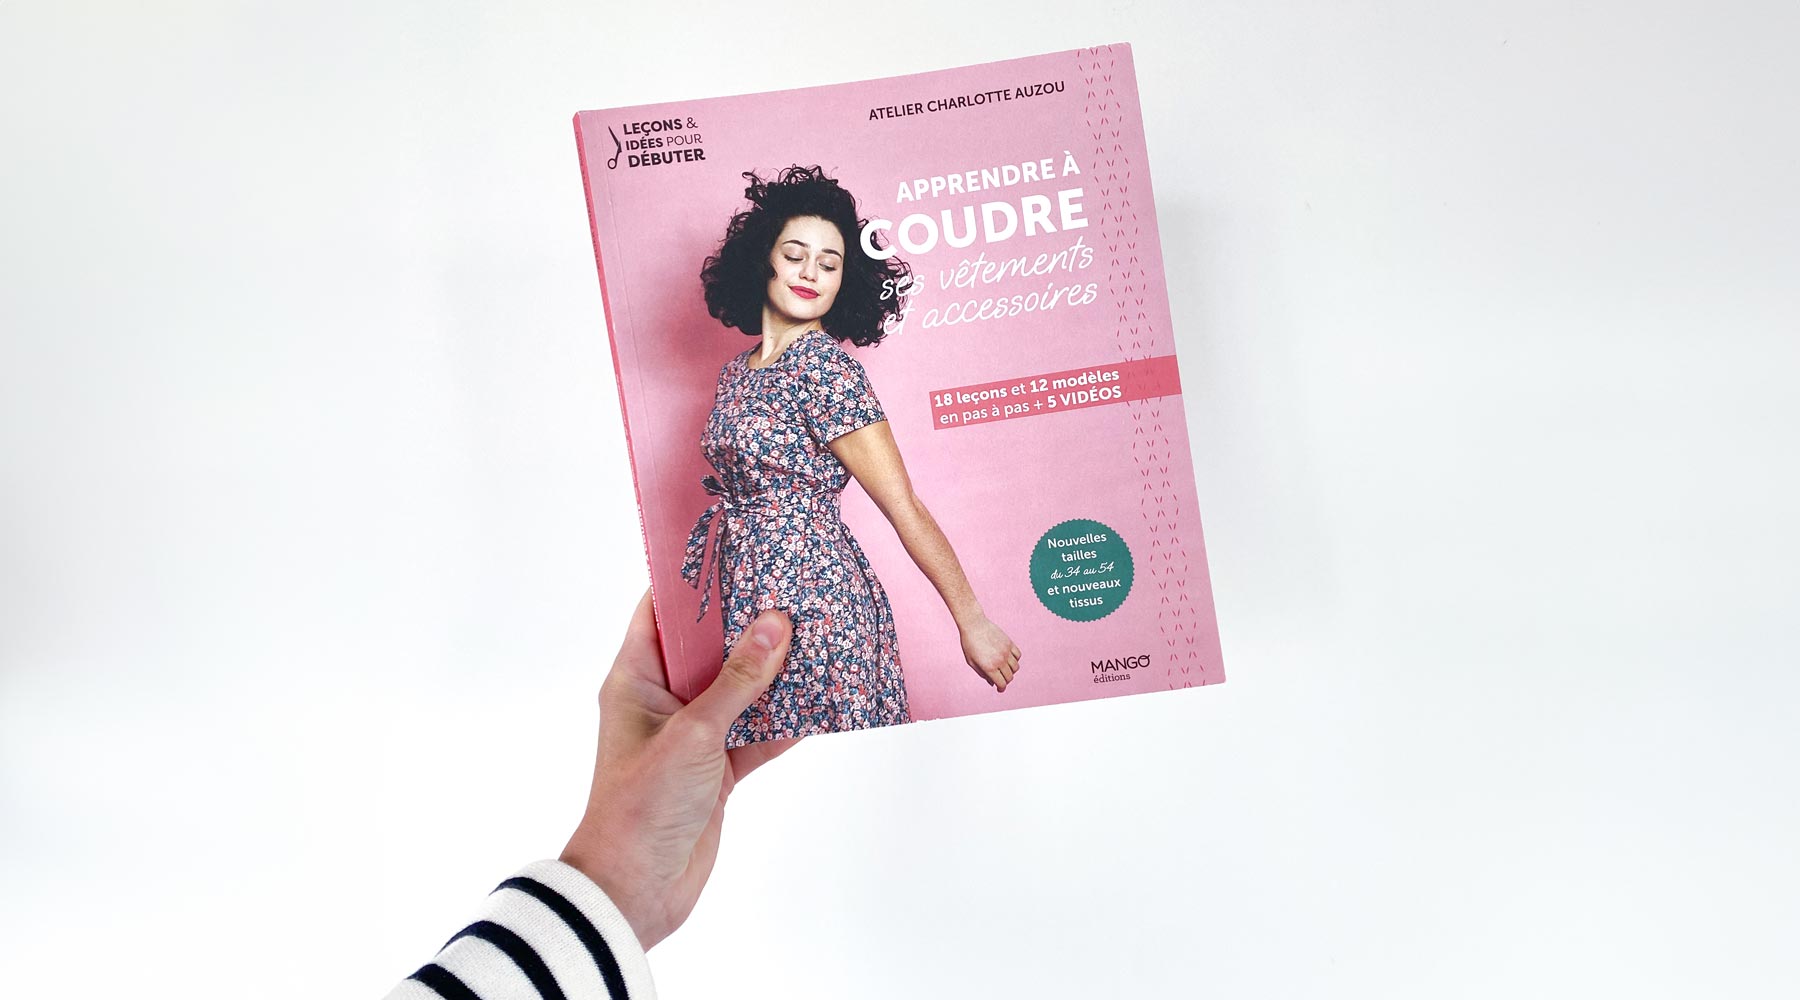 Apprendre à Coudre ses Vêtements et Accessoires, Livre de Couture pour Débutantes par Atelier Charlotte Auzou